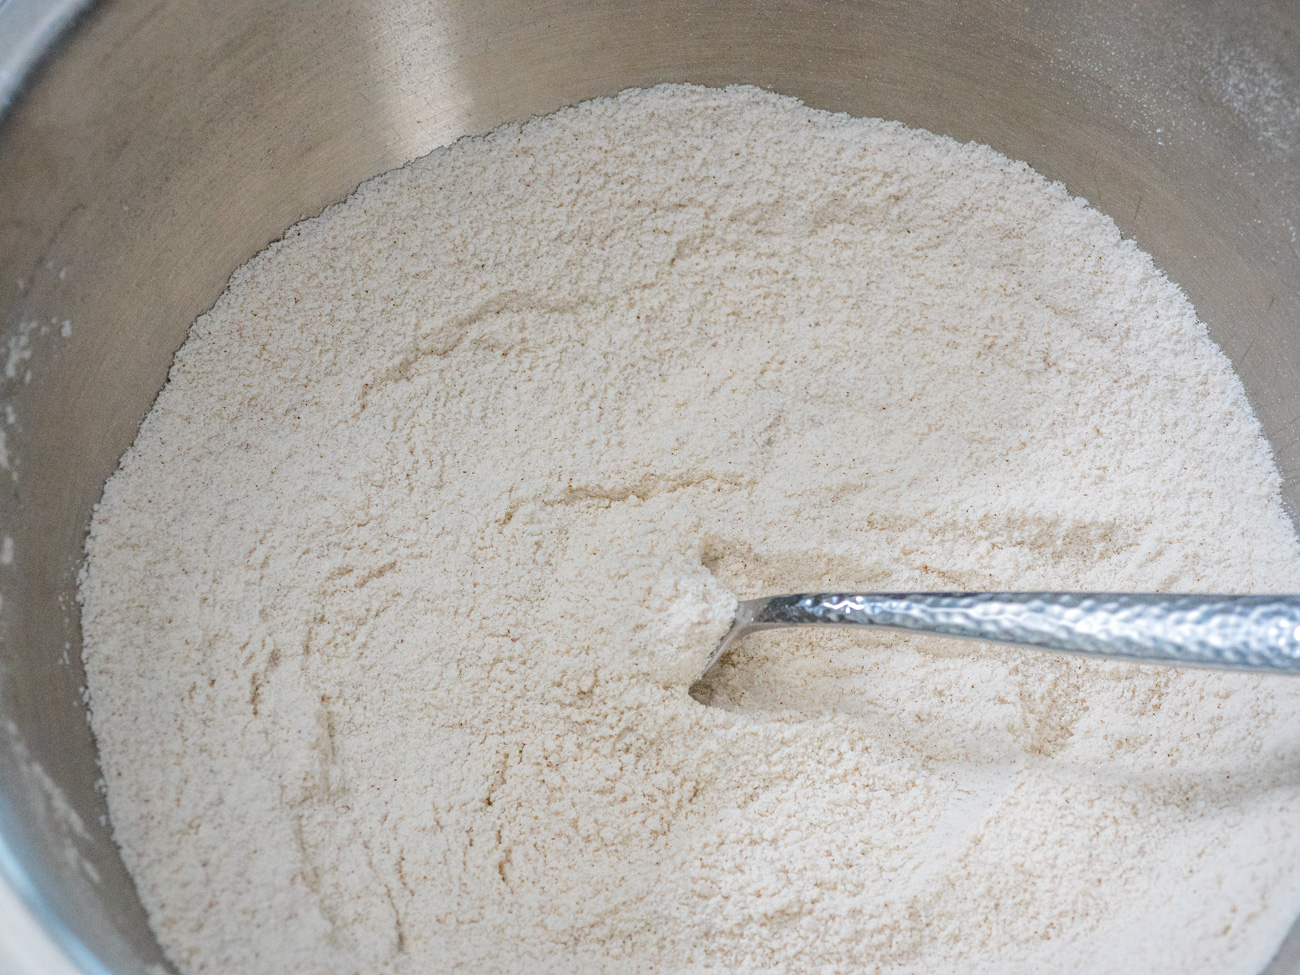  En un tazón grande, mezcle la harina, el azúcar, el polvo de hornear, el bicarbonato de sodio, la sal y la canela.